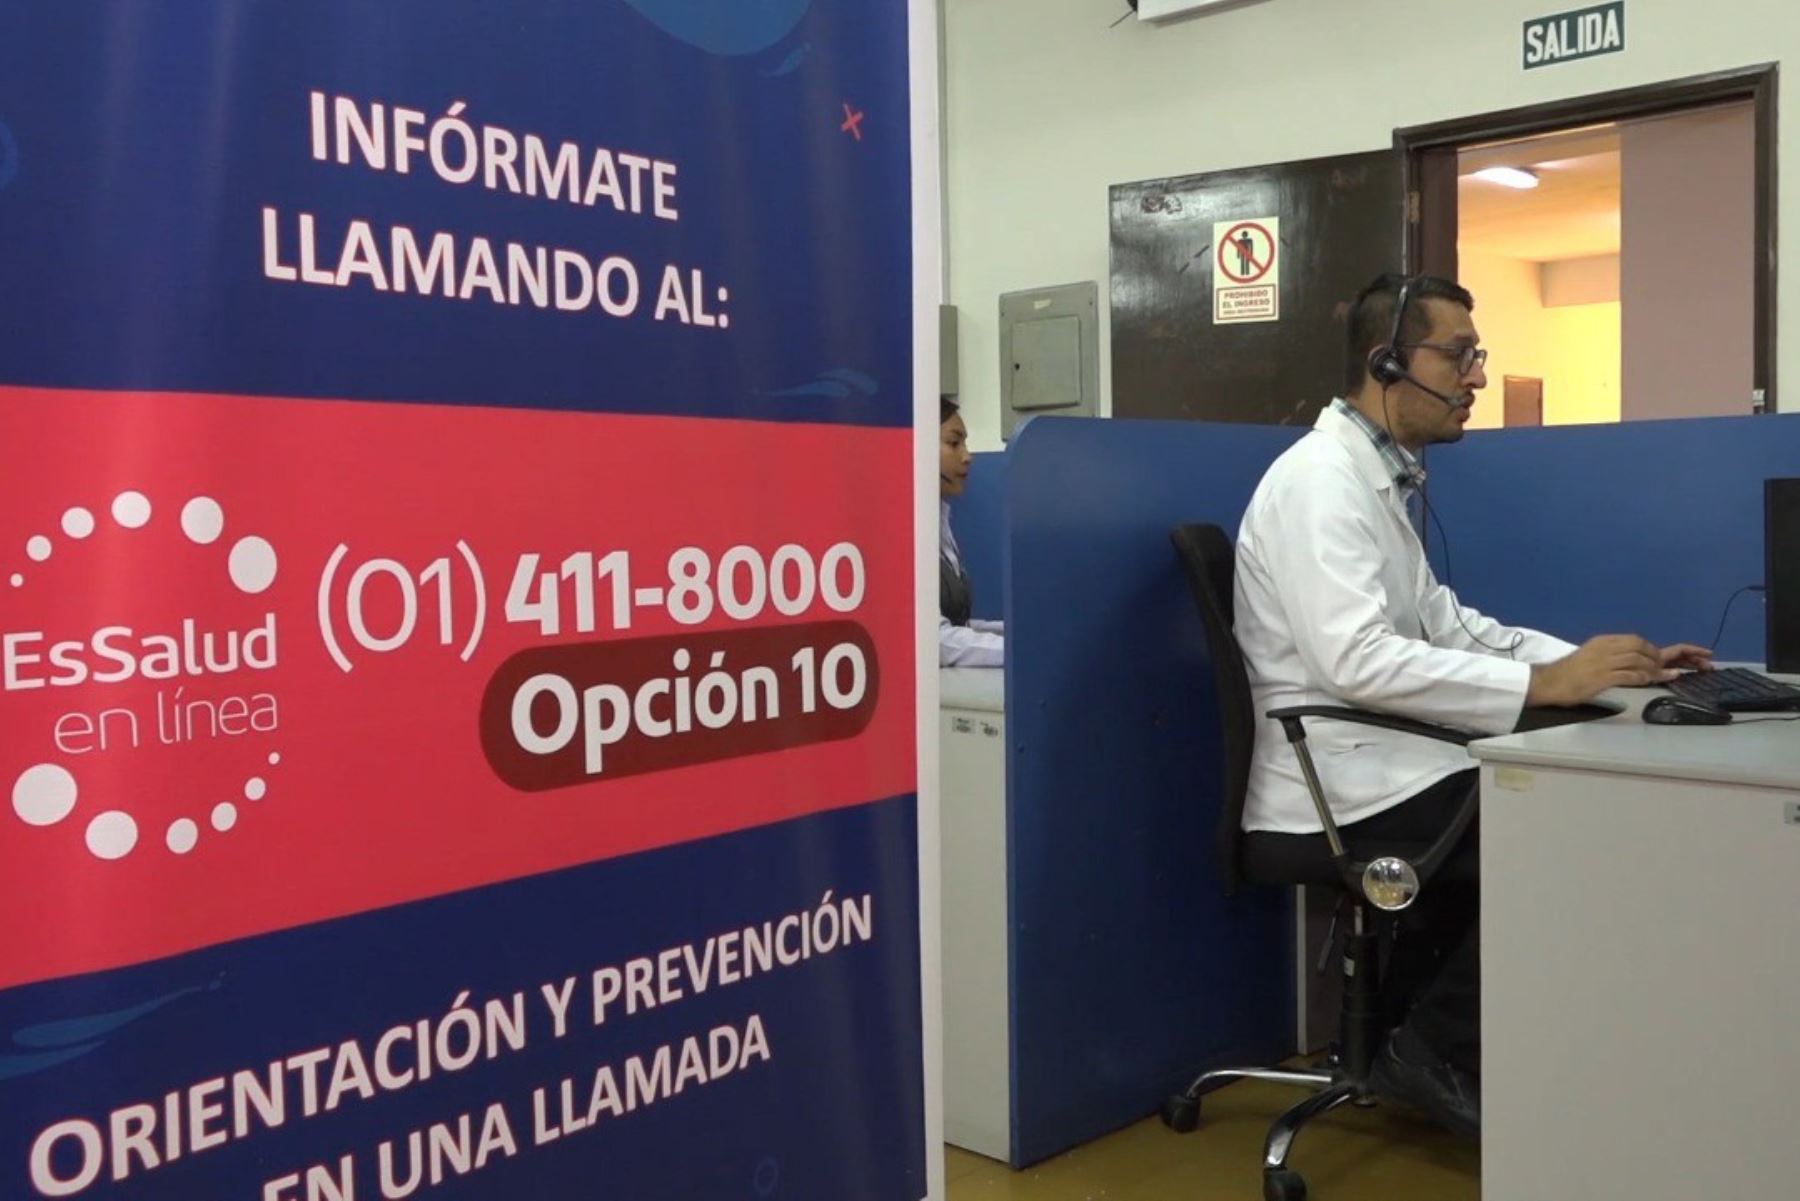 El Seguro Social de Salud (EsSalud) habilitó la línea 411-8000, opción 10, para informar a la población sobre el coronavirus y cómo prevenir la propagación de esta enfermedad que afecta a diversos países del mundo y que ya registró su primer caso confirmado en el Perú.